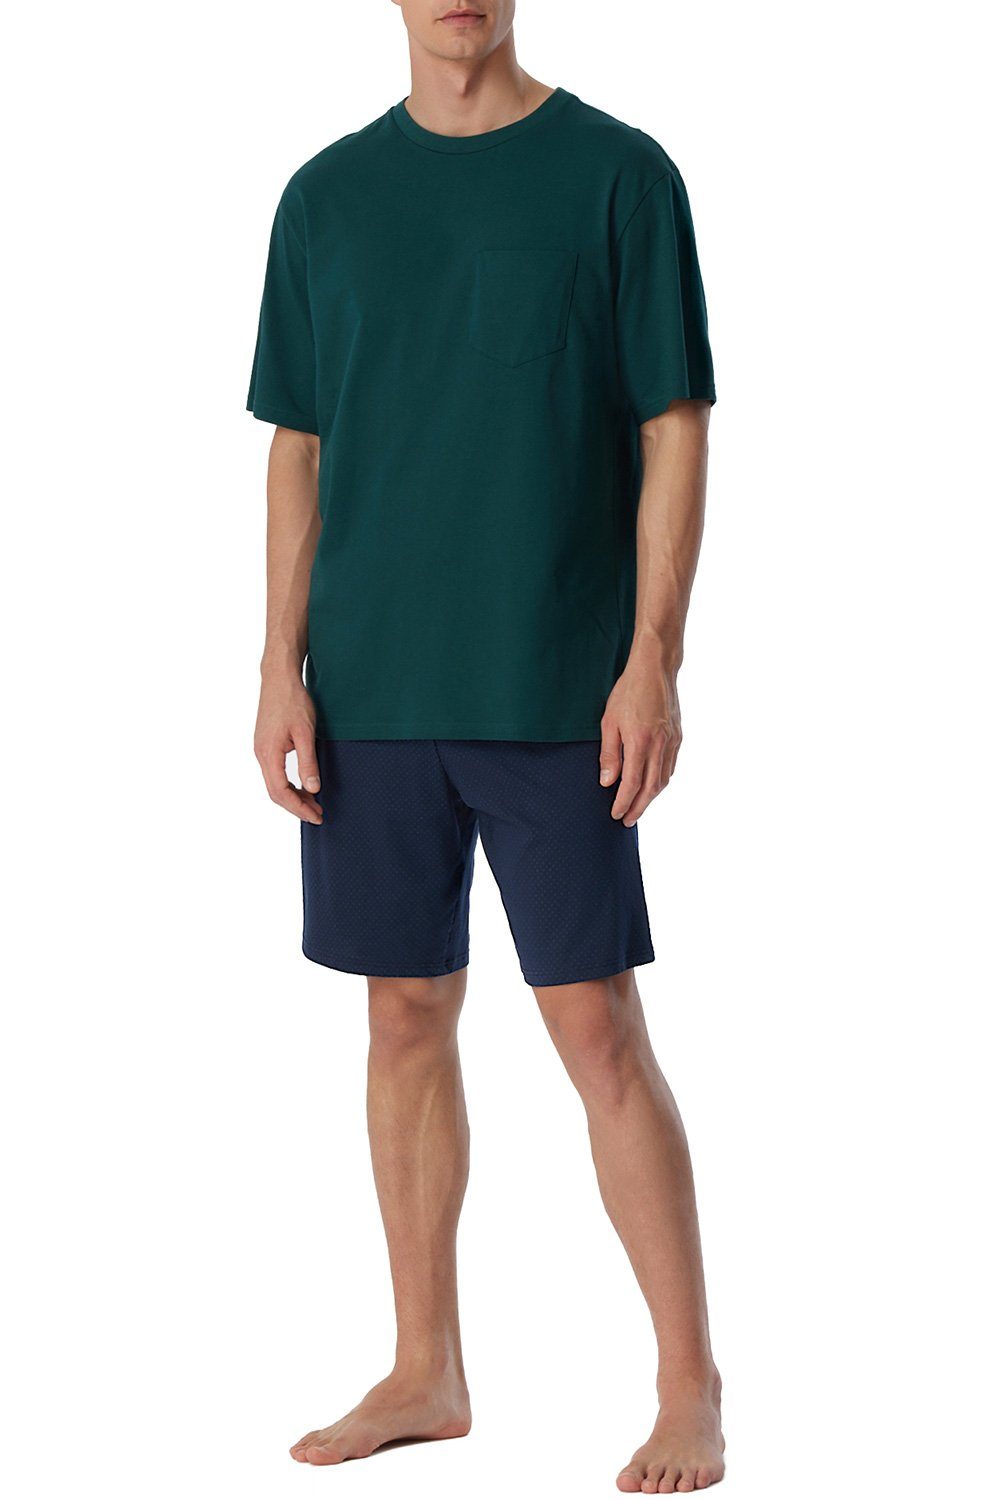 Schiesser Shorty Essentials Nightwear (2 tlg) Herren Pyjama Set kurz aus reiner Baumwolle dunkelgrün